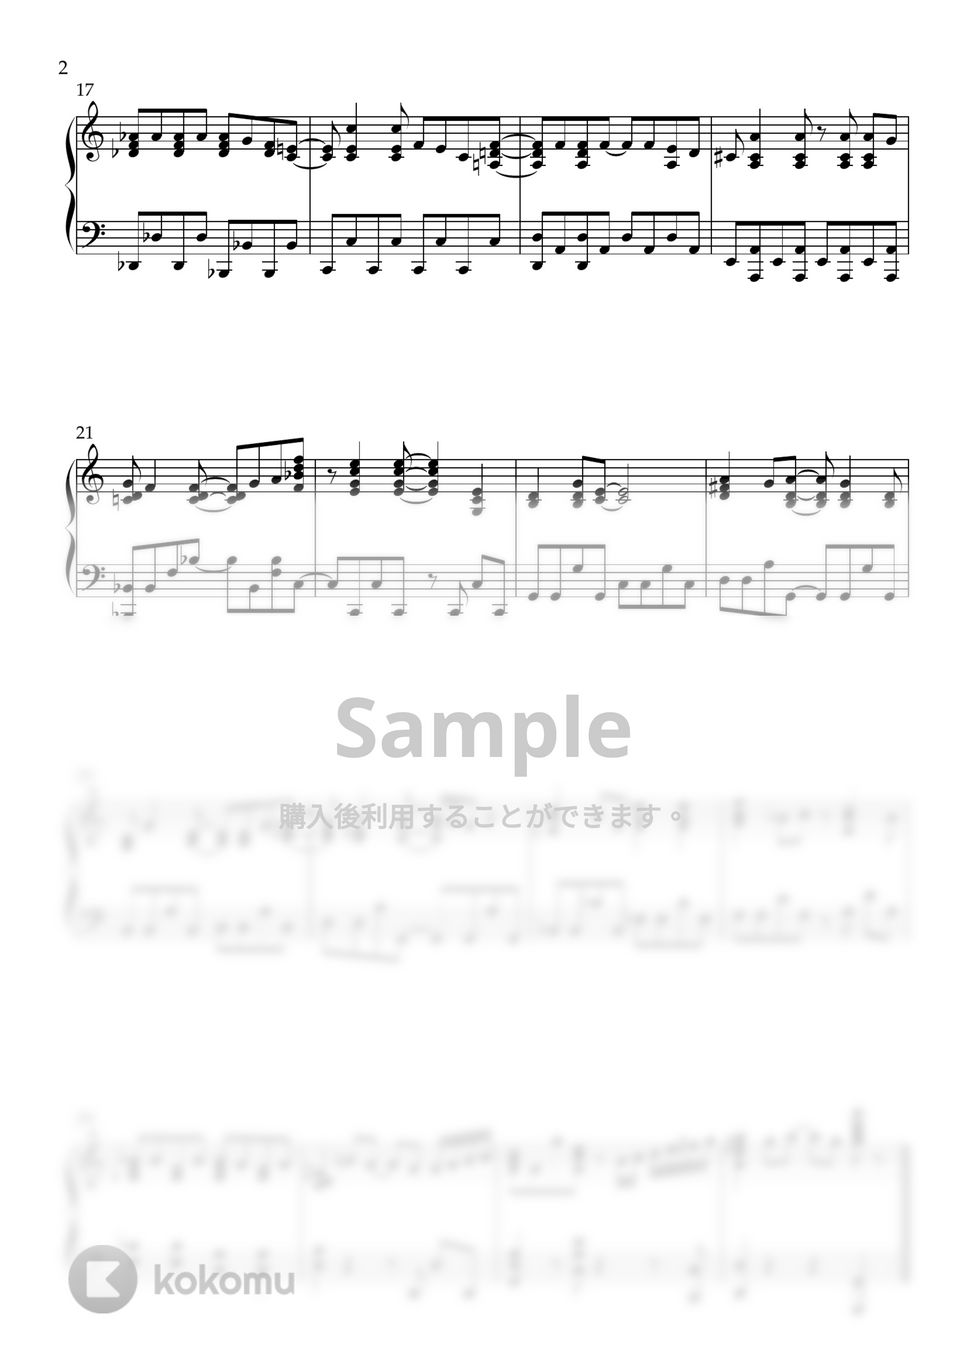 バンピリーナとバンパイアかぞく - Vampirina Theme (PIANO SOLO) by CLOUD LADDER 구름사다리뮤직